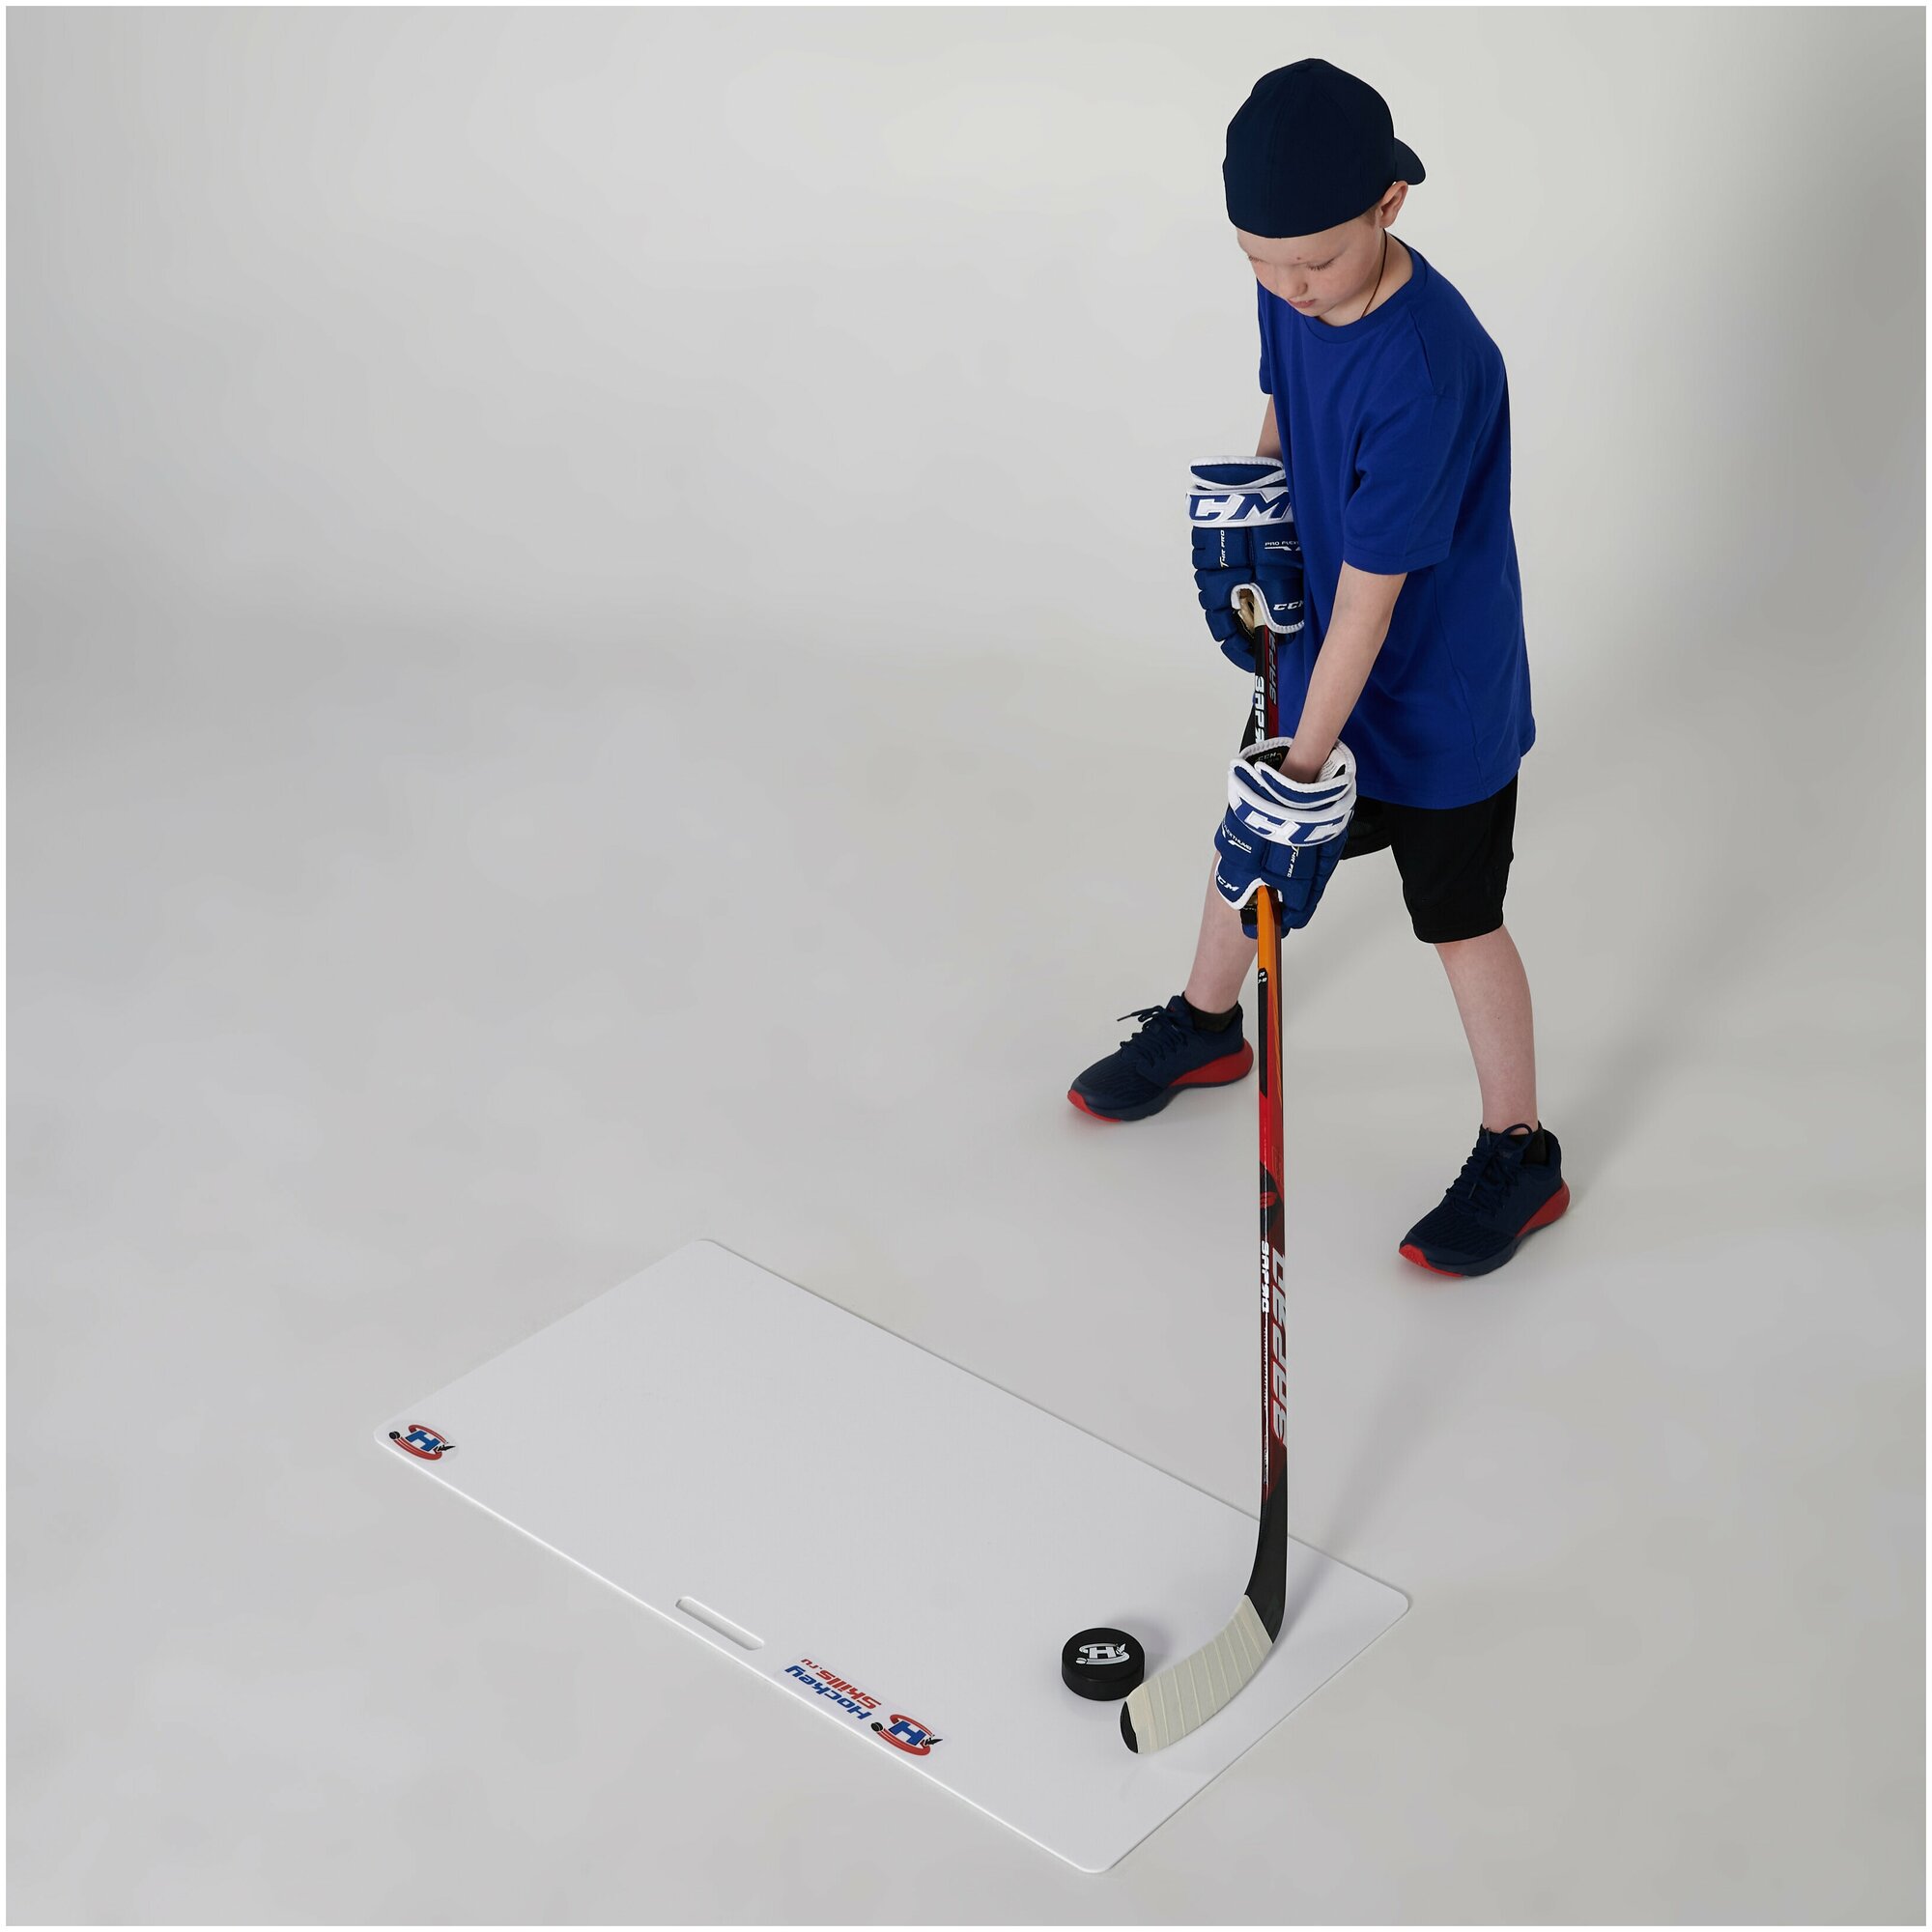 Панель для бросков и дриблинга HOCKEY SKILLS - Размер 50 x 100 см, толщина 3 мм - Искусственный лед - Хоккейный тренажер.